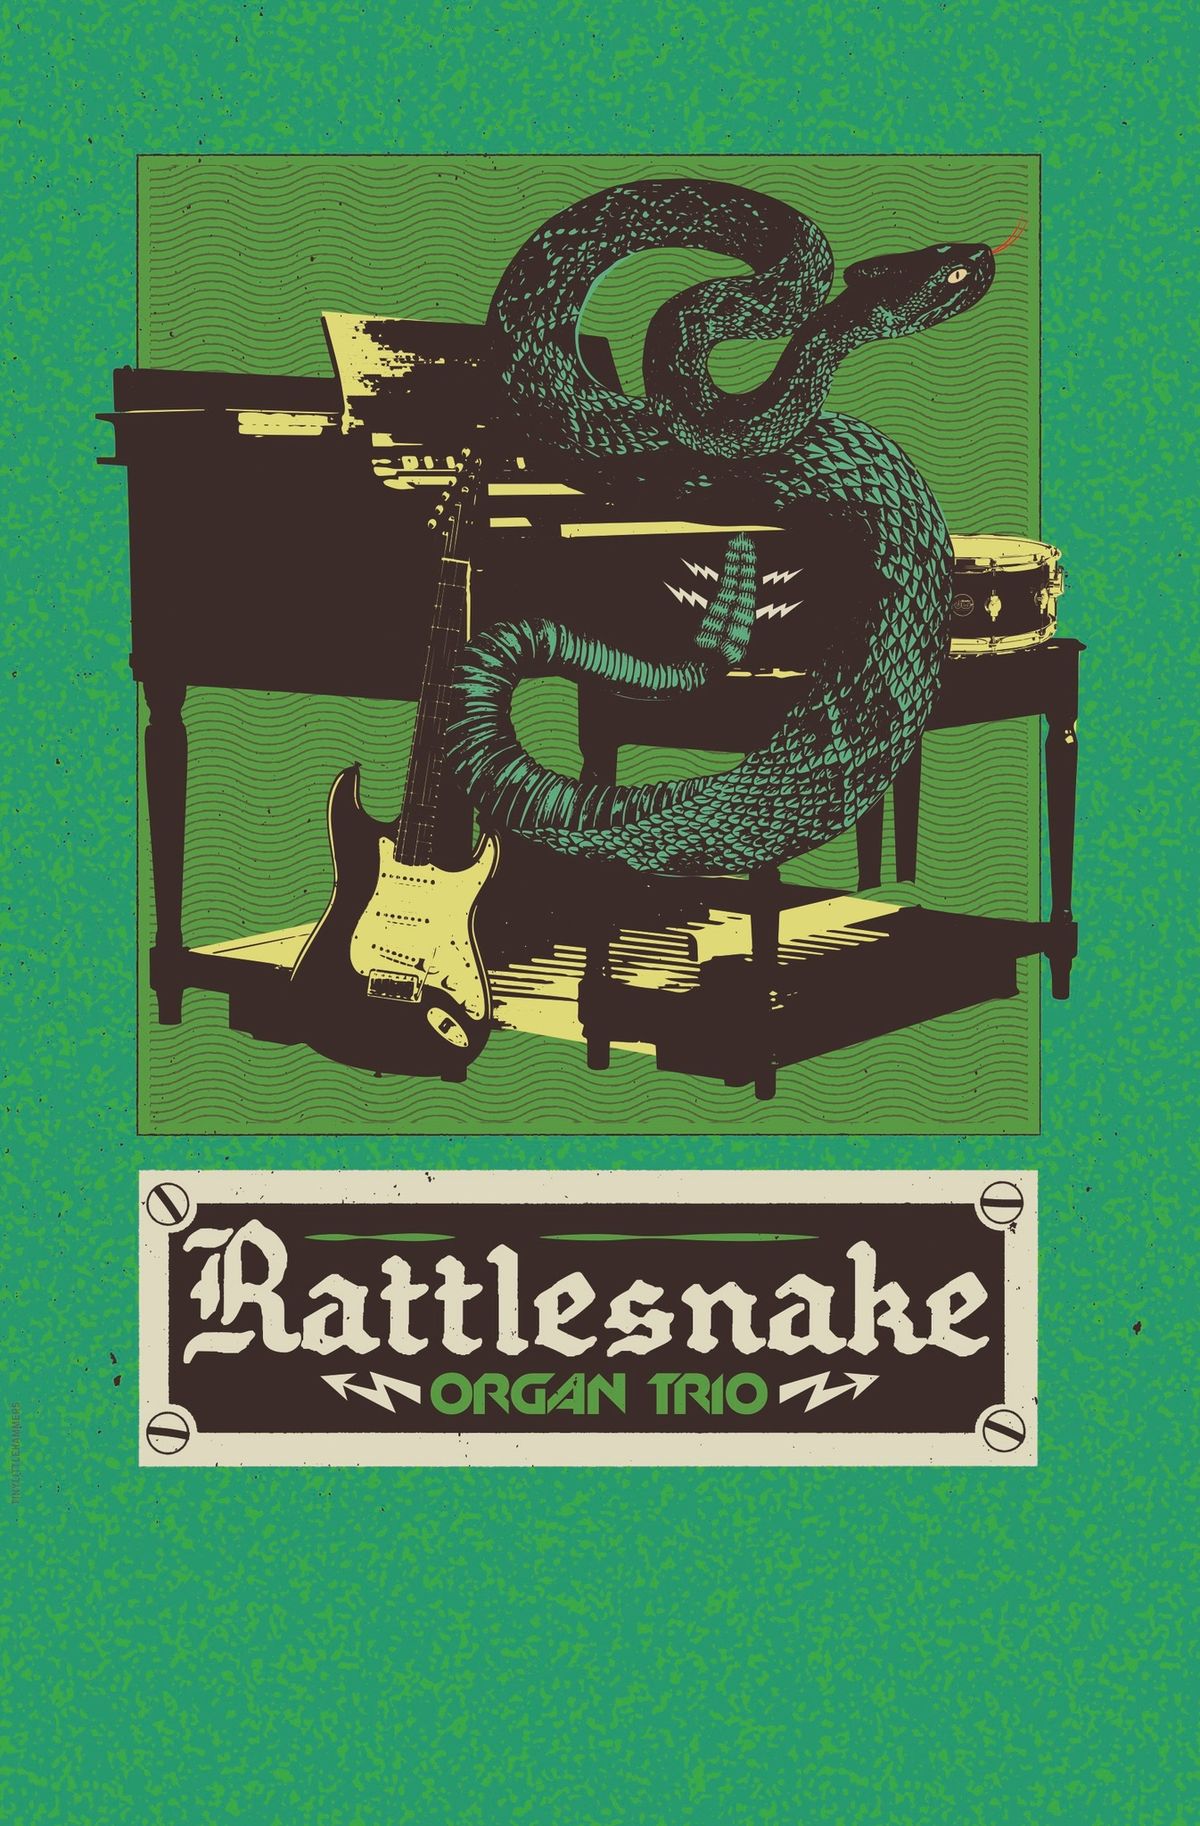 Rattlesnake Organ Trio 